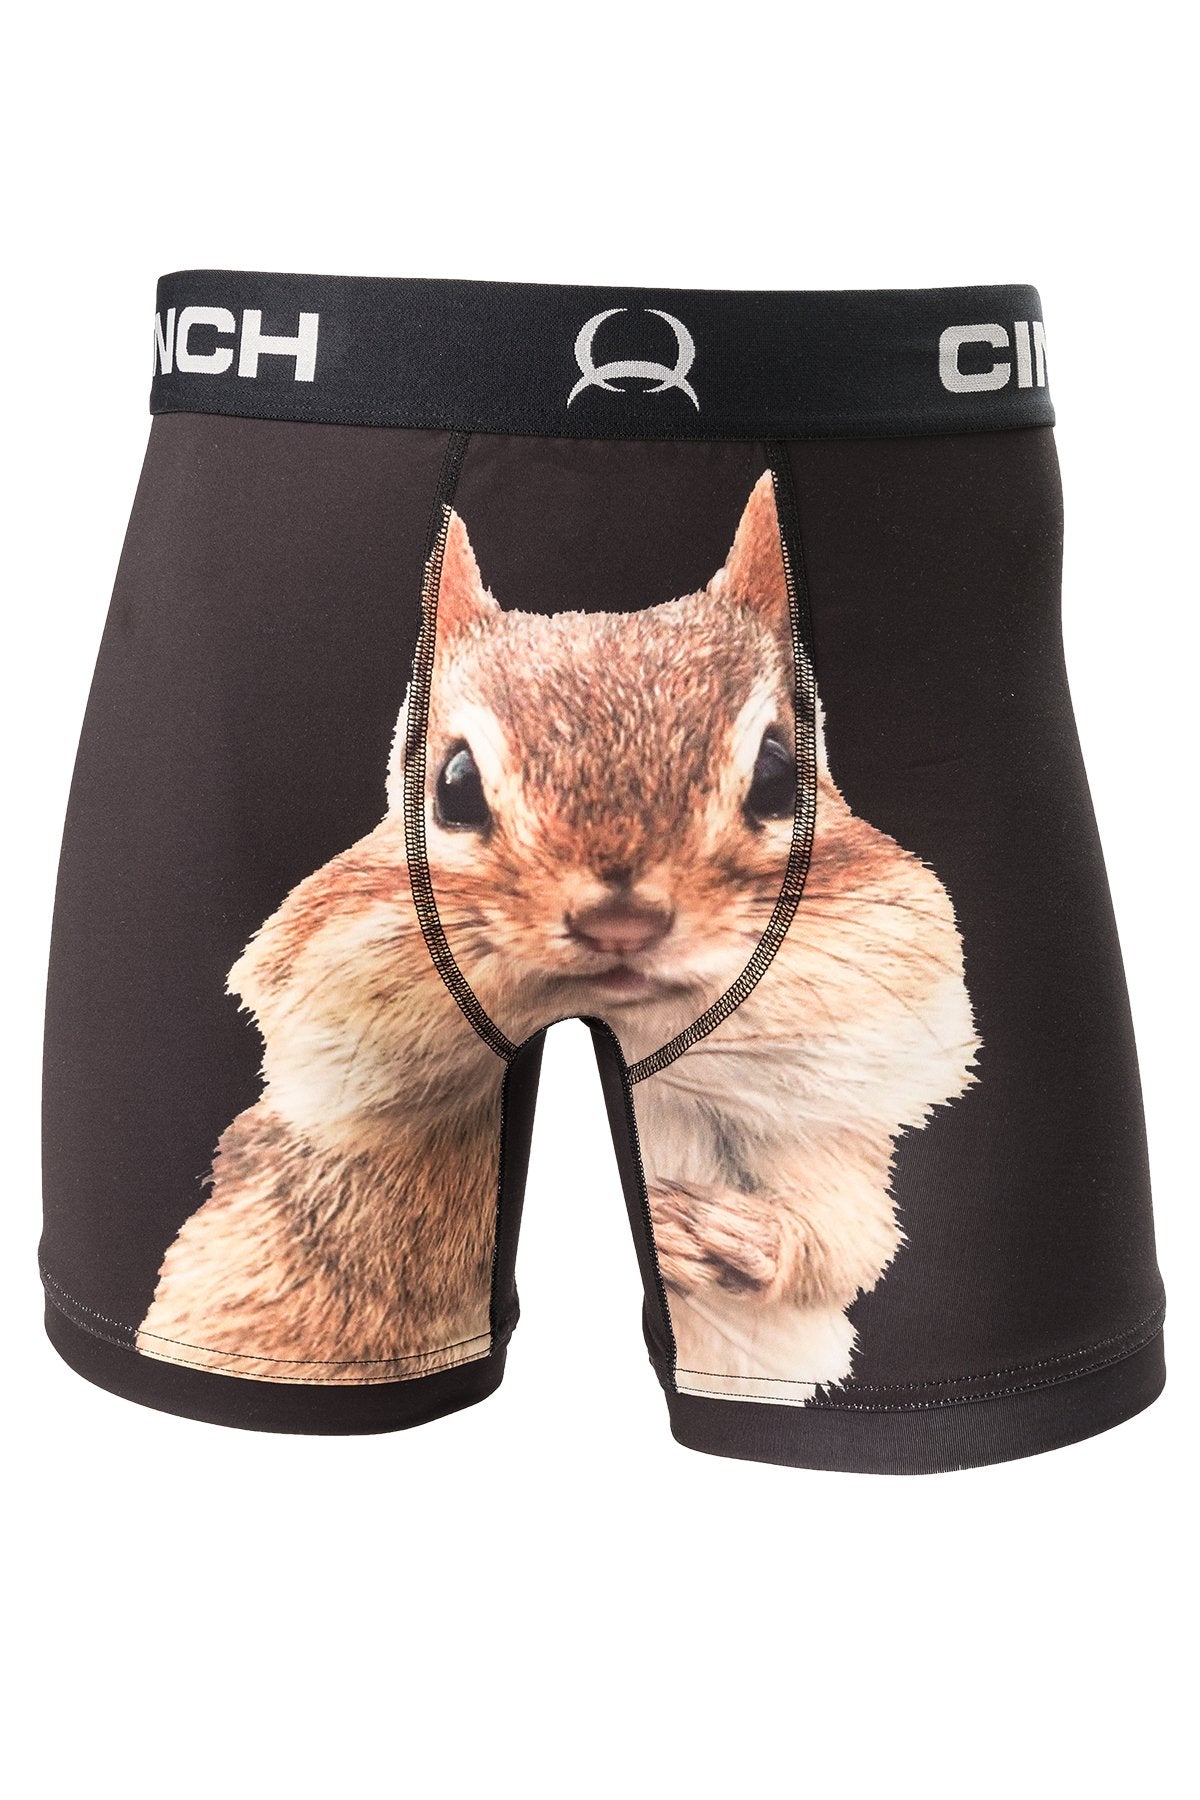 Cinch Boxers Brief-Squirrel